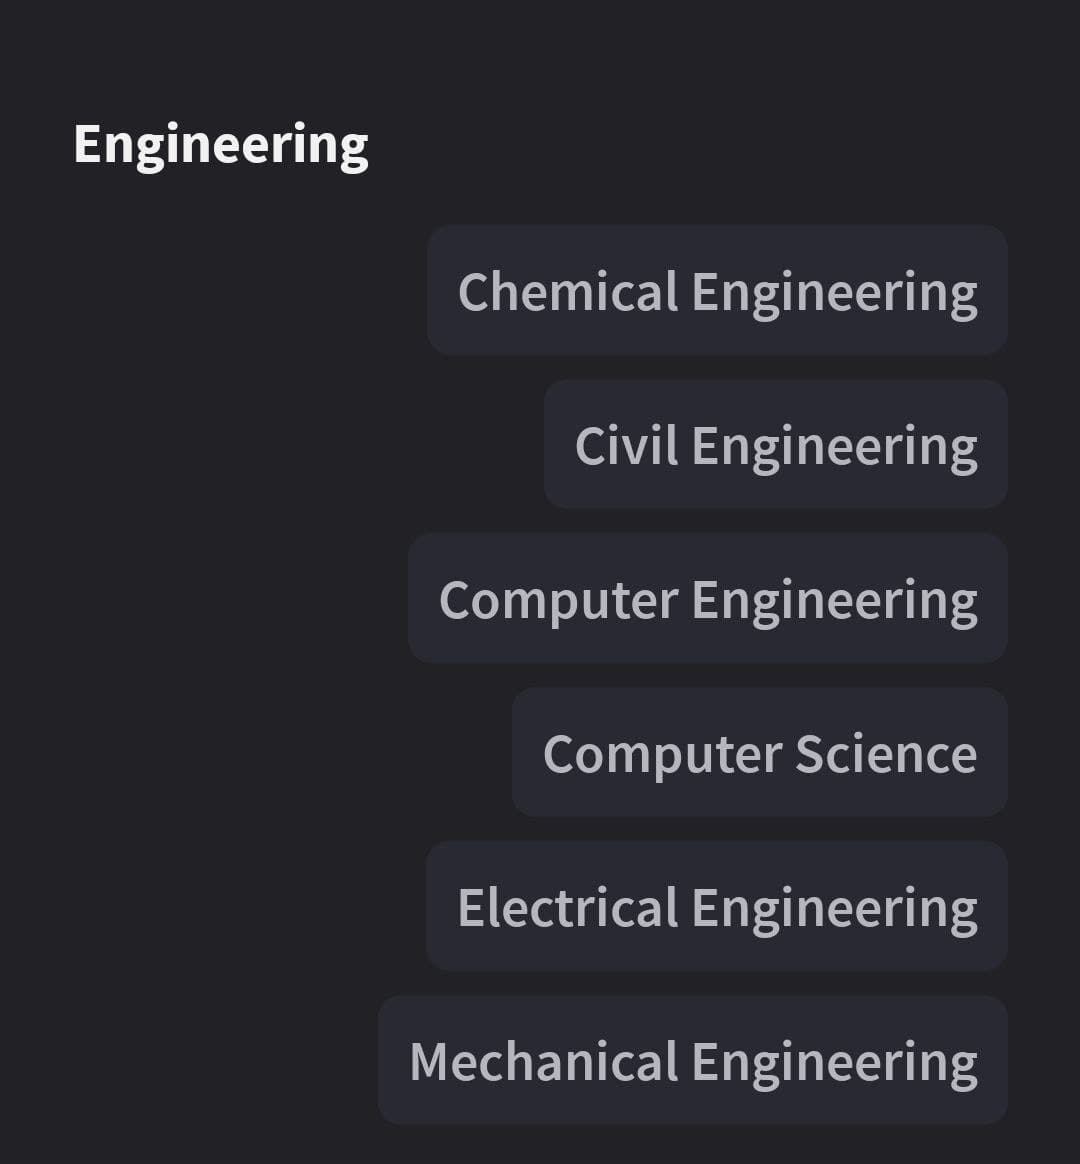 Engineering
Chemical Engineering
Civil Engineering
Computer Engineering
Computer Science
Electrical Engineering
Mechanical Engineering
